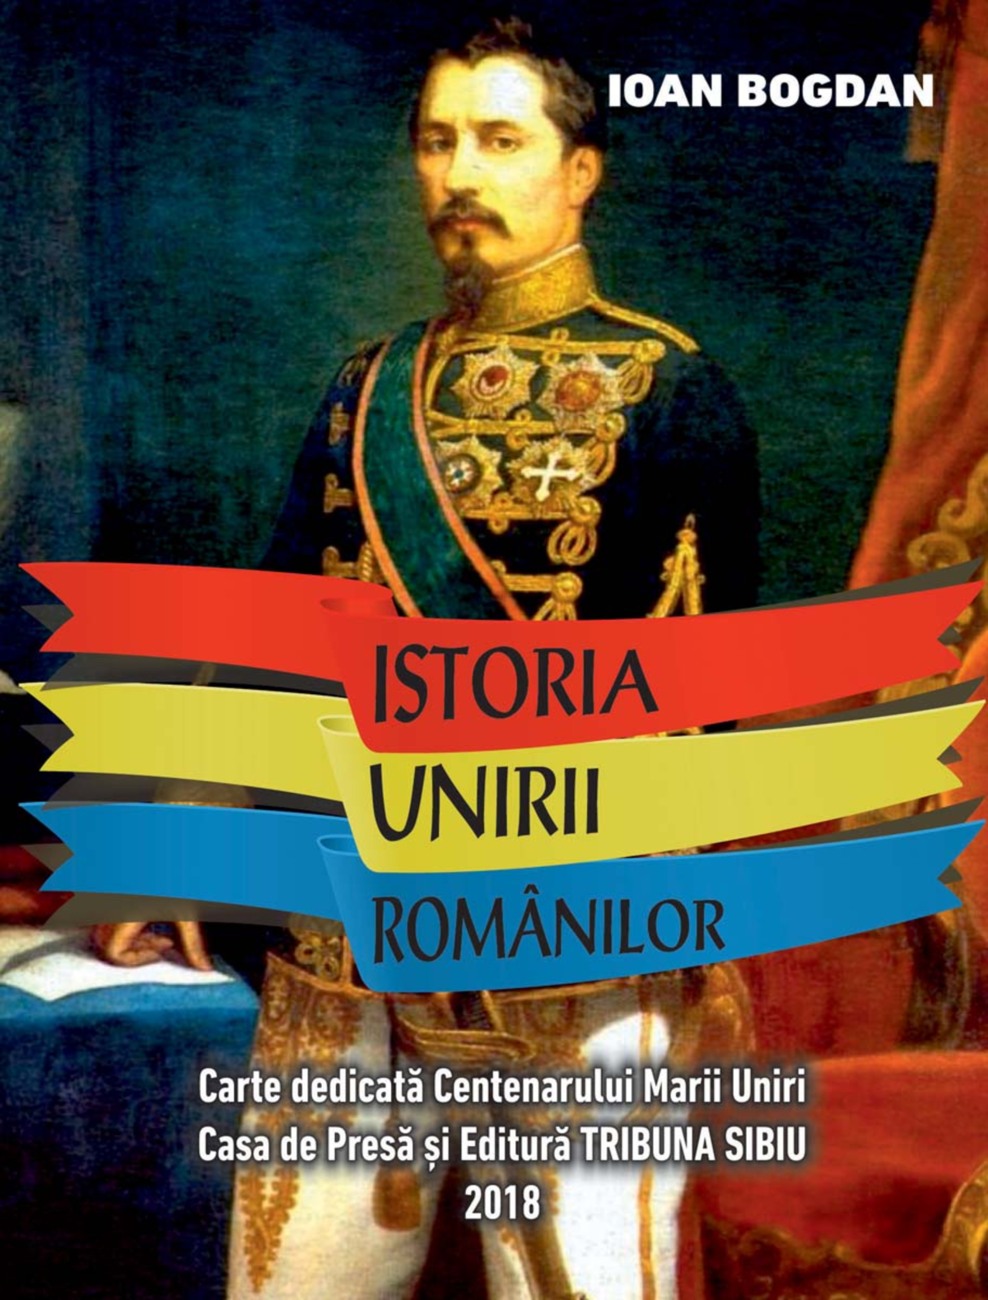 Unirea românilor - văzută de profesorul Ioan Bogdan - într-o carte unicat